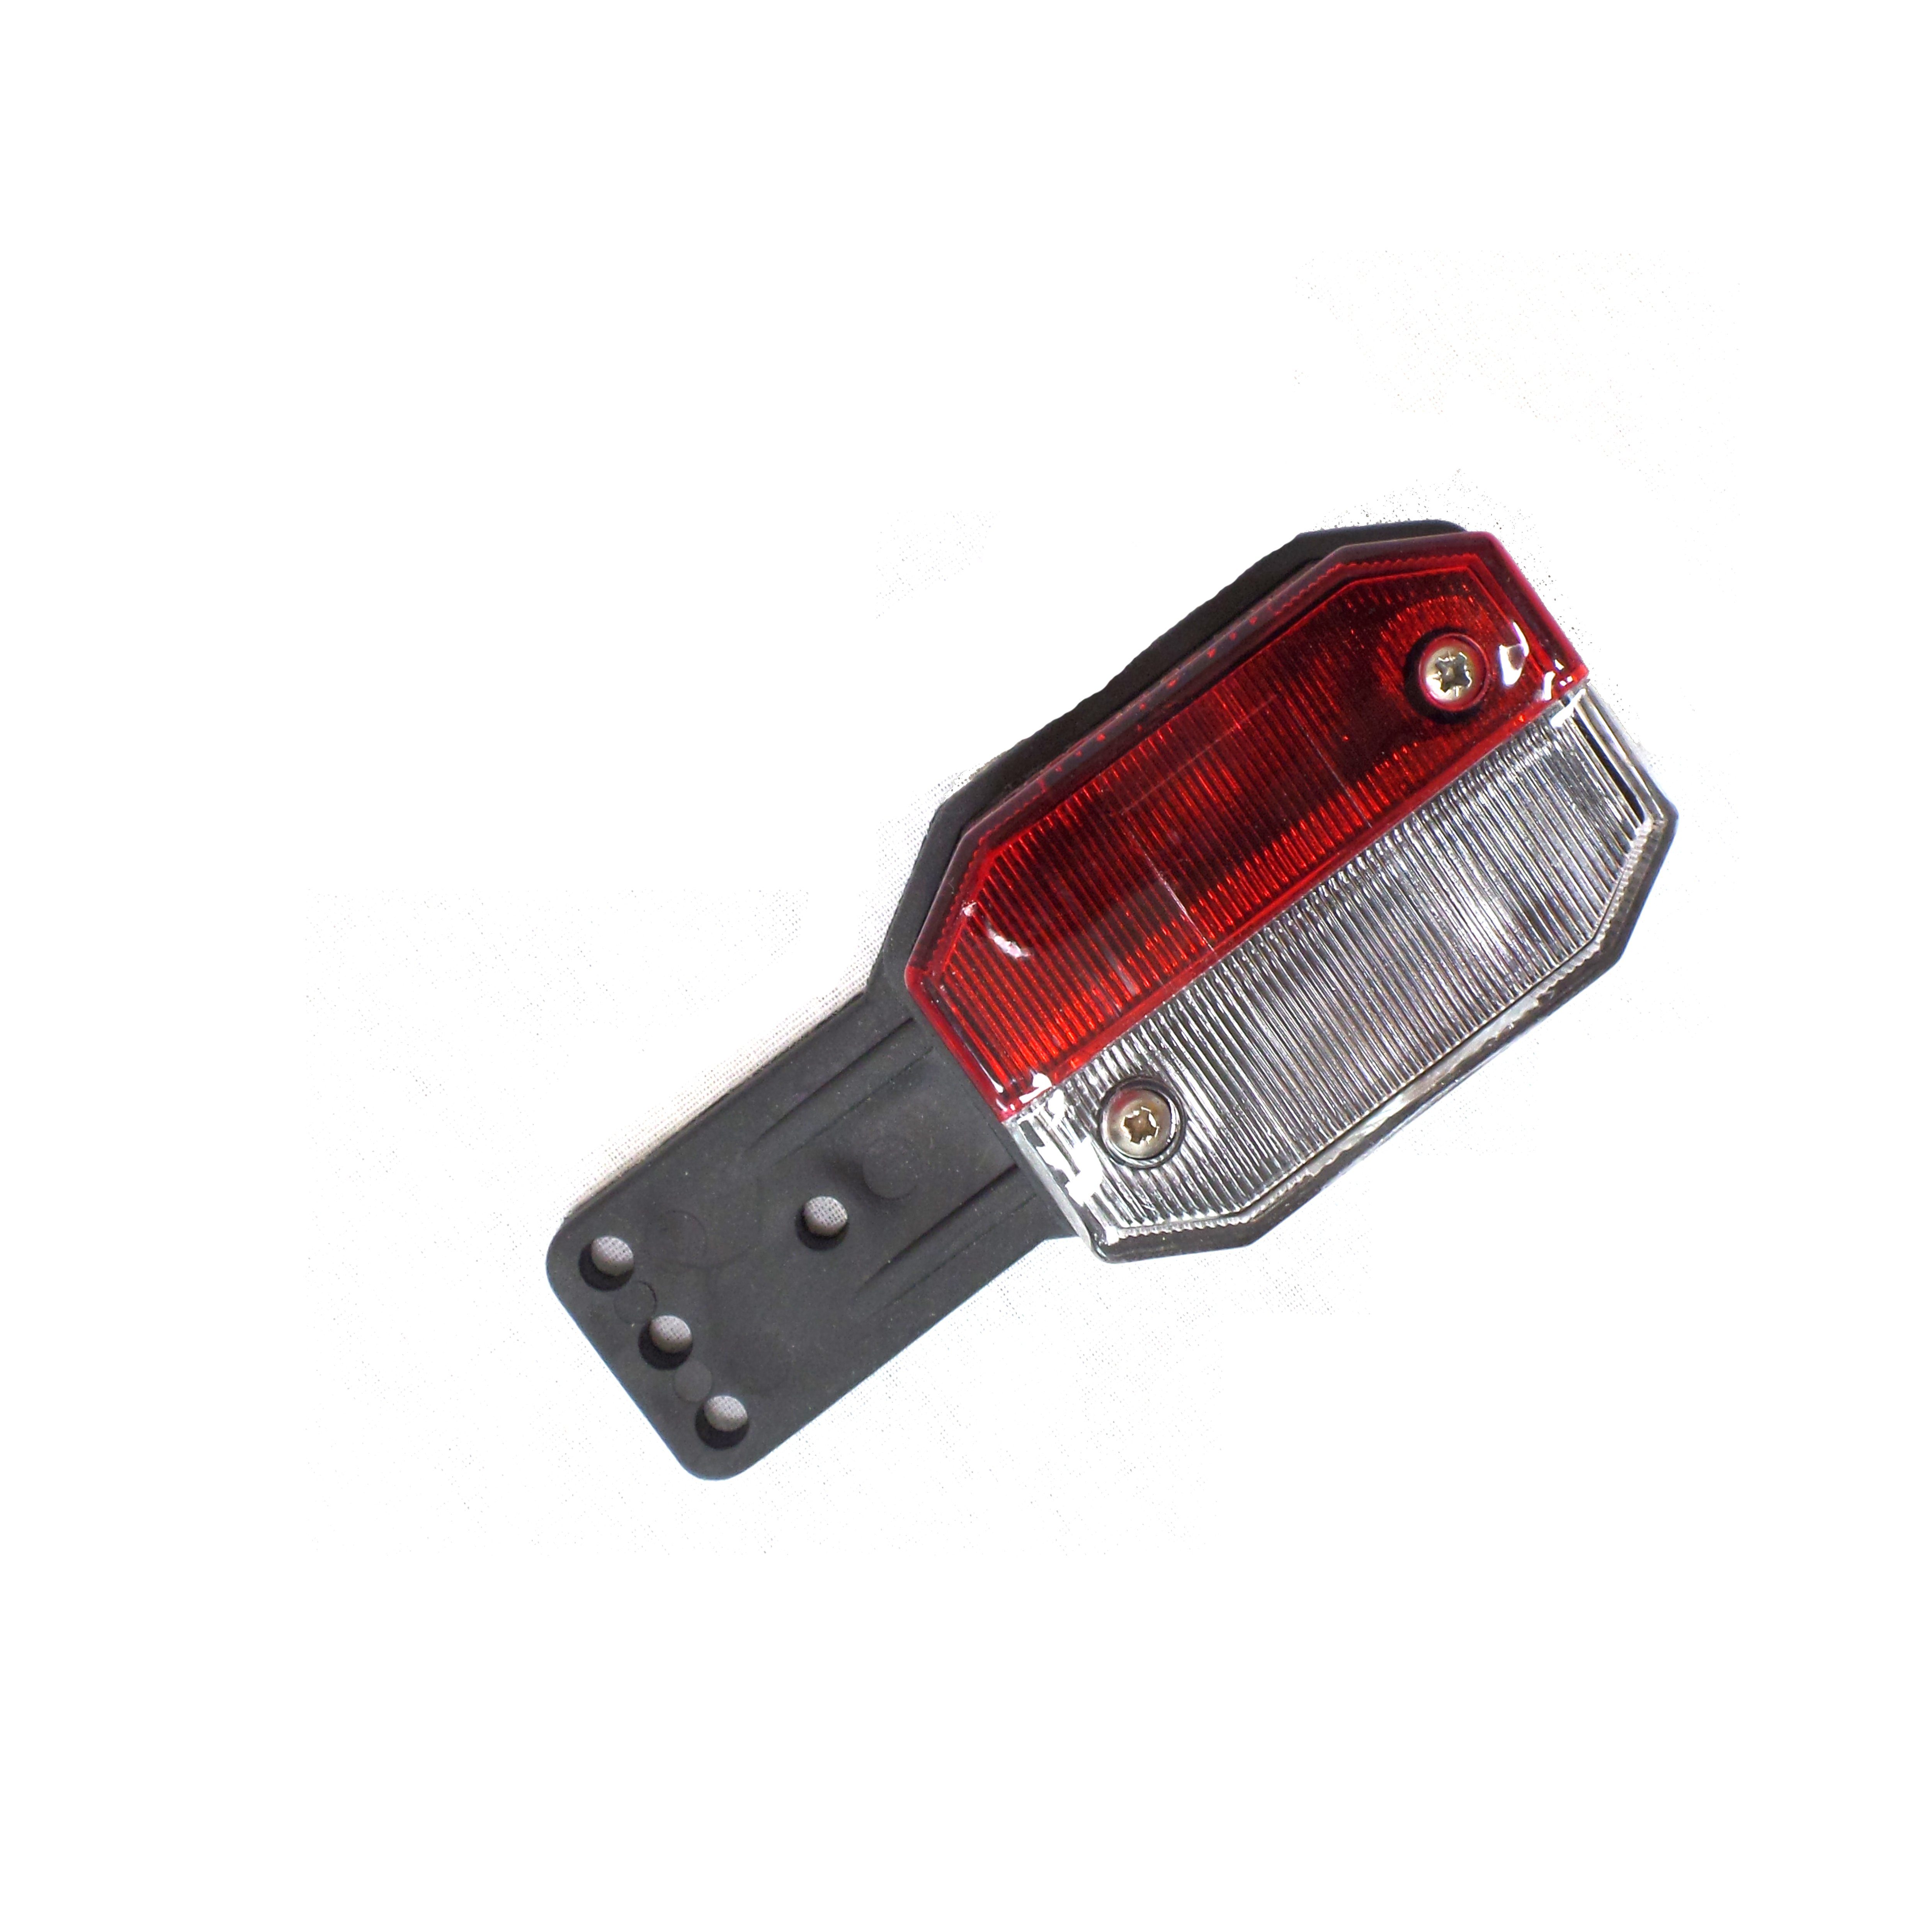 Aspöck Anhänger-Rückleuchte Leuchtmittel, Positionsleuchte Flexipoint 2x rot / - weiß ohne Umrissleuchte rot/weiß